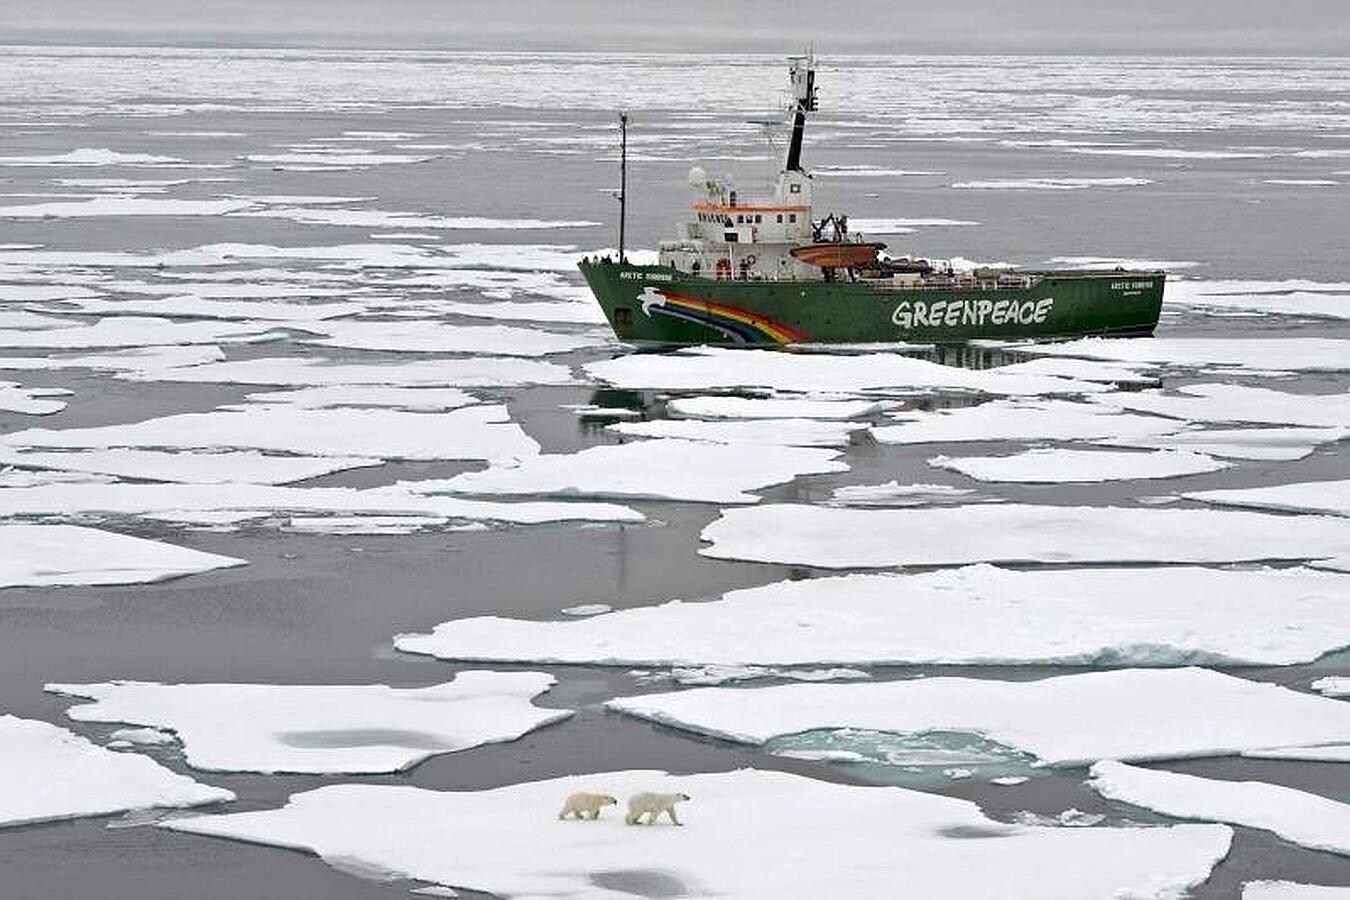 El hielo marino es muy importante para muchas especies, desde el fitoplancton a las más emblématicas, como el oso polar